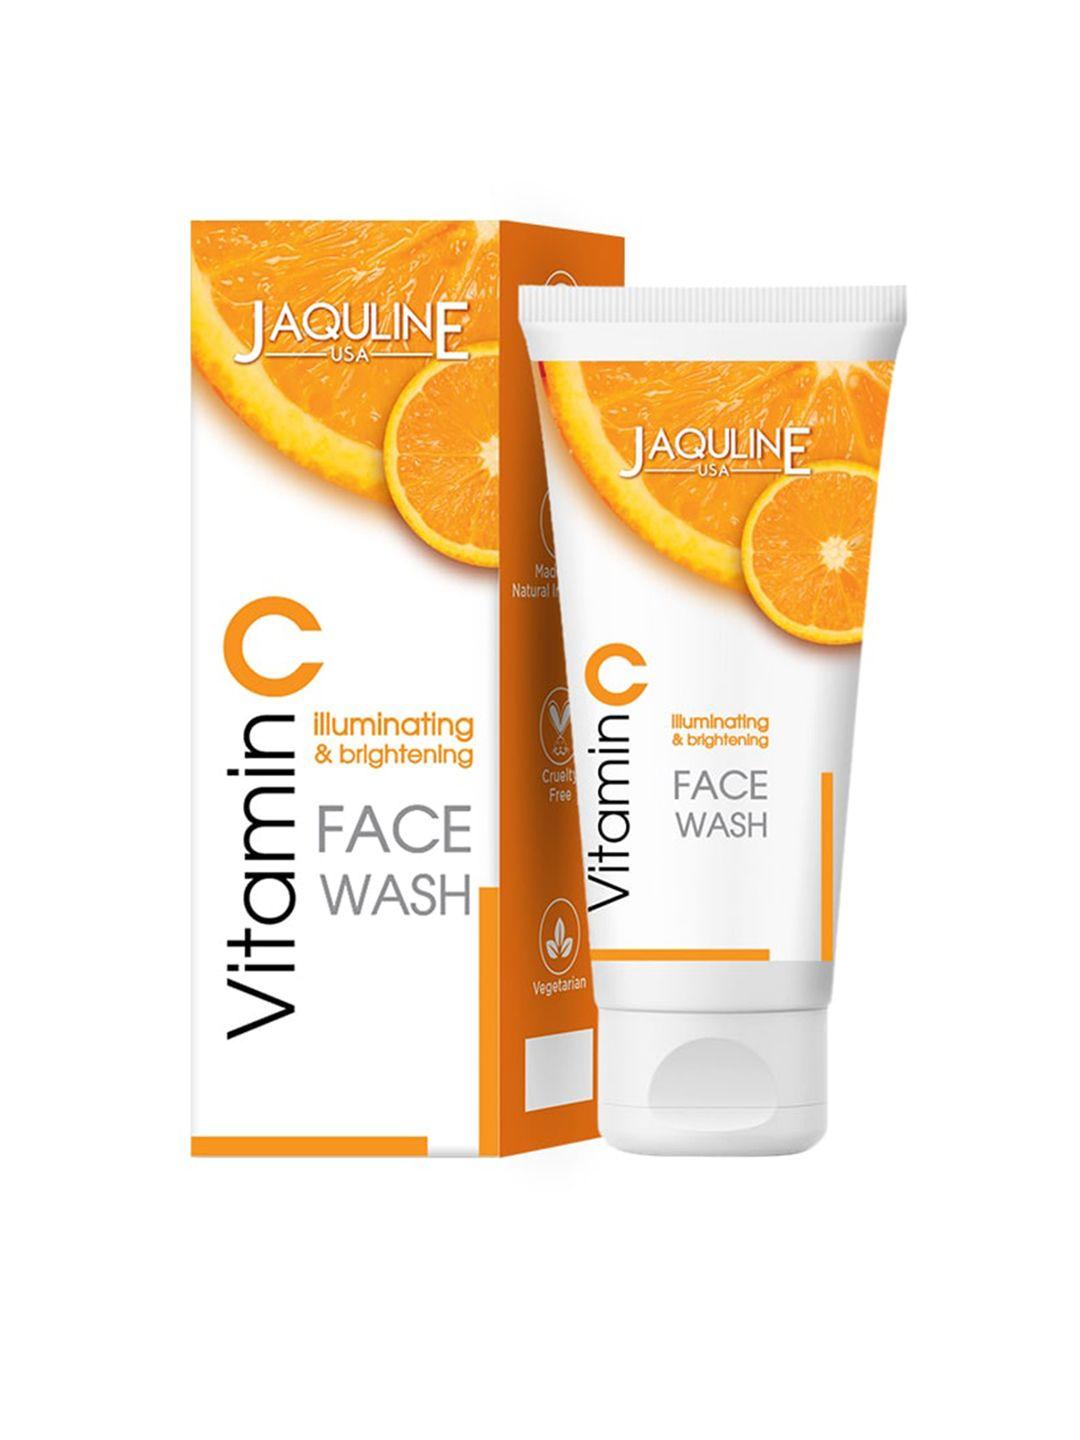 jaquline usa vitamin c illuminating & brightening face wash - 100 ml